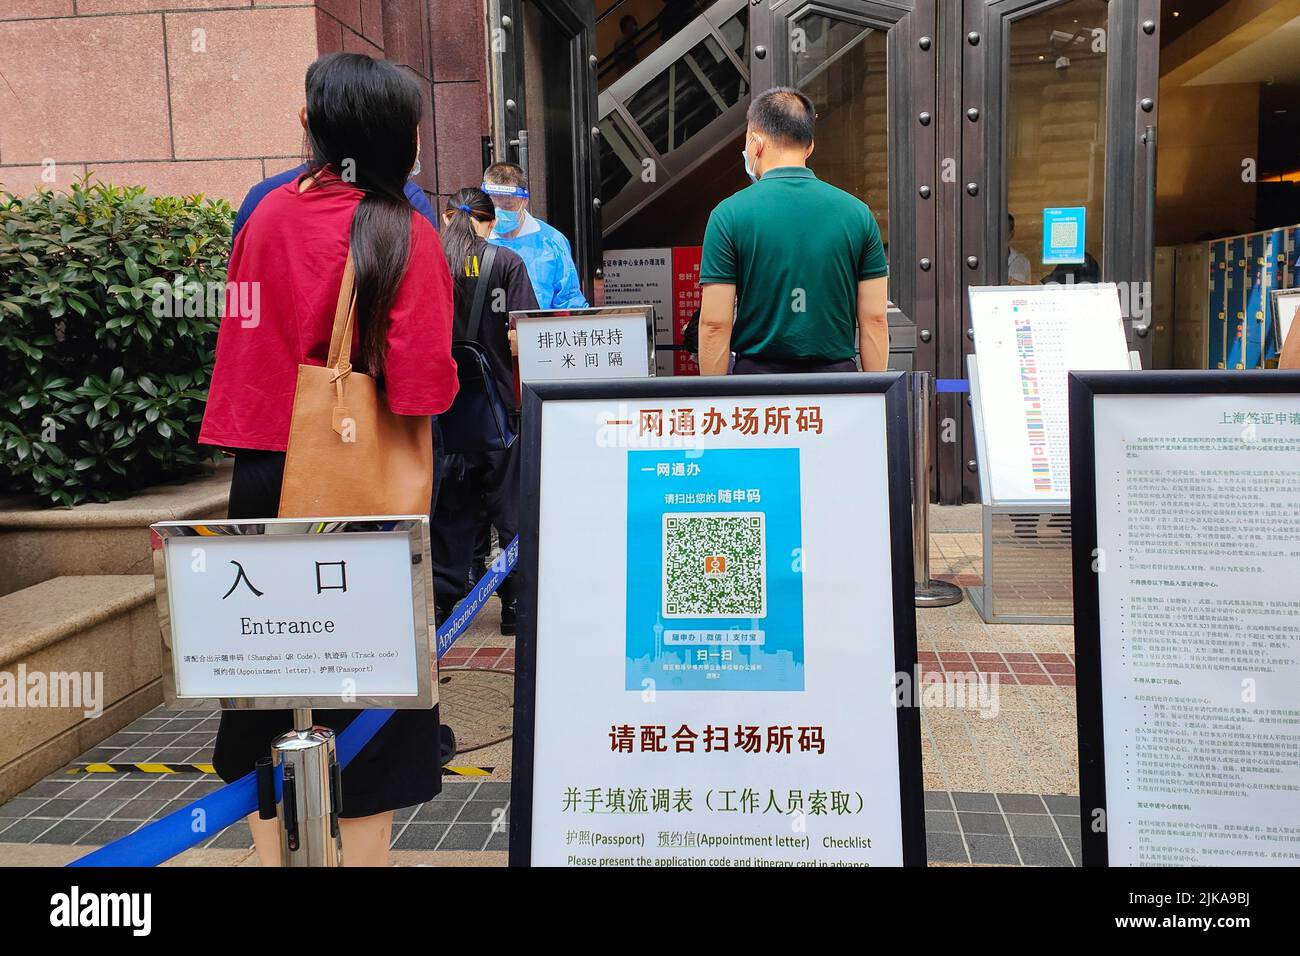 SHANGHAI, CHINE - le 1 AOÛT 2022 - Une longue file d'attente se forme devant un centre de visas à Shanghai, en Chine, le 1 août 2022. 213 Sichuan Middle Road est la maison Banque D'Images